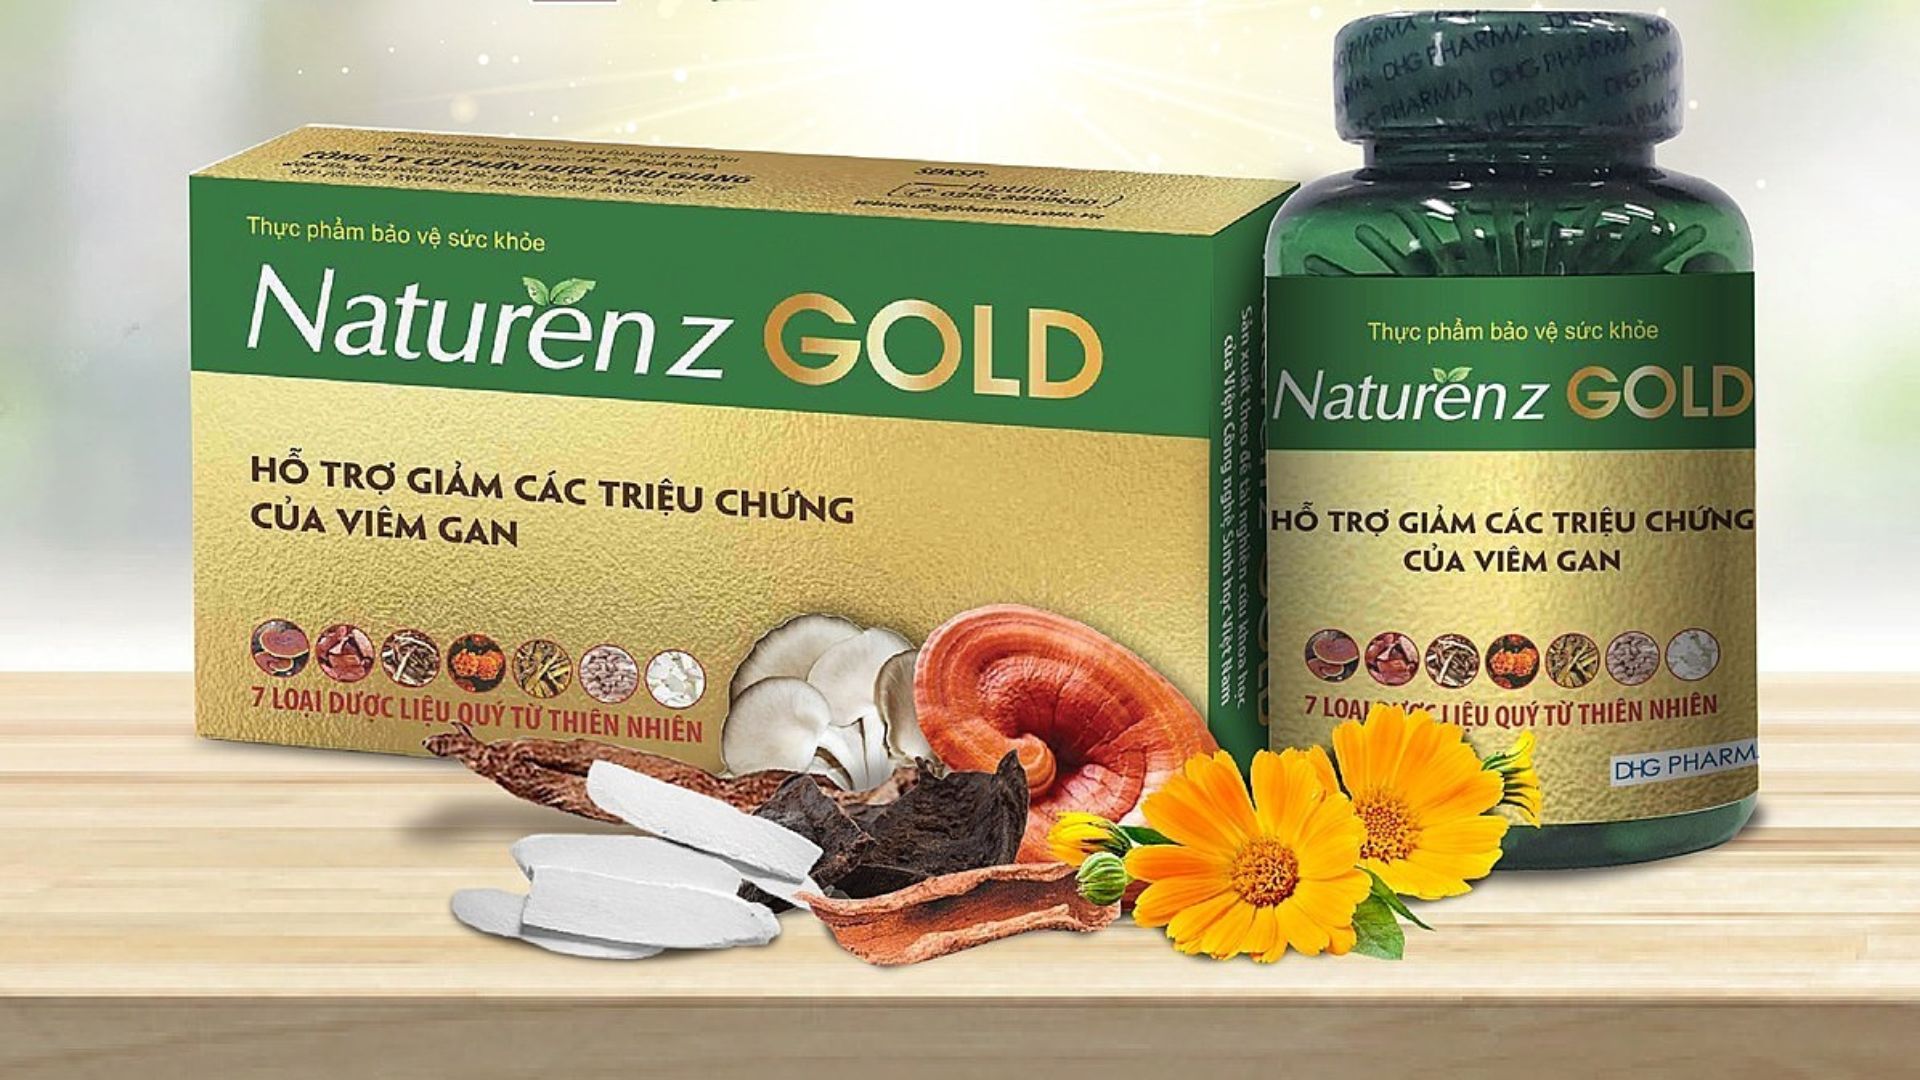 Naturenz Gold - Bí quyết vàng hỗ trợ giảm viêm gan hiệu quả